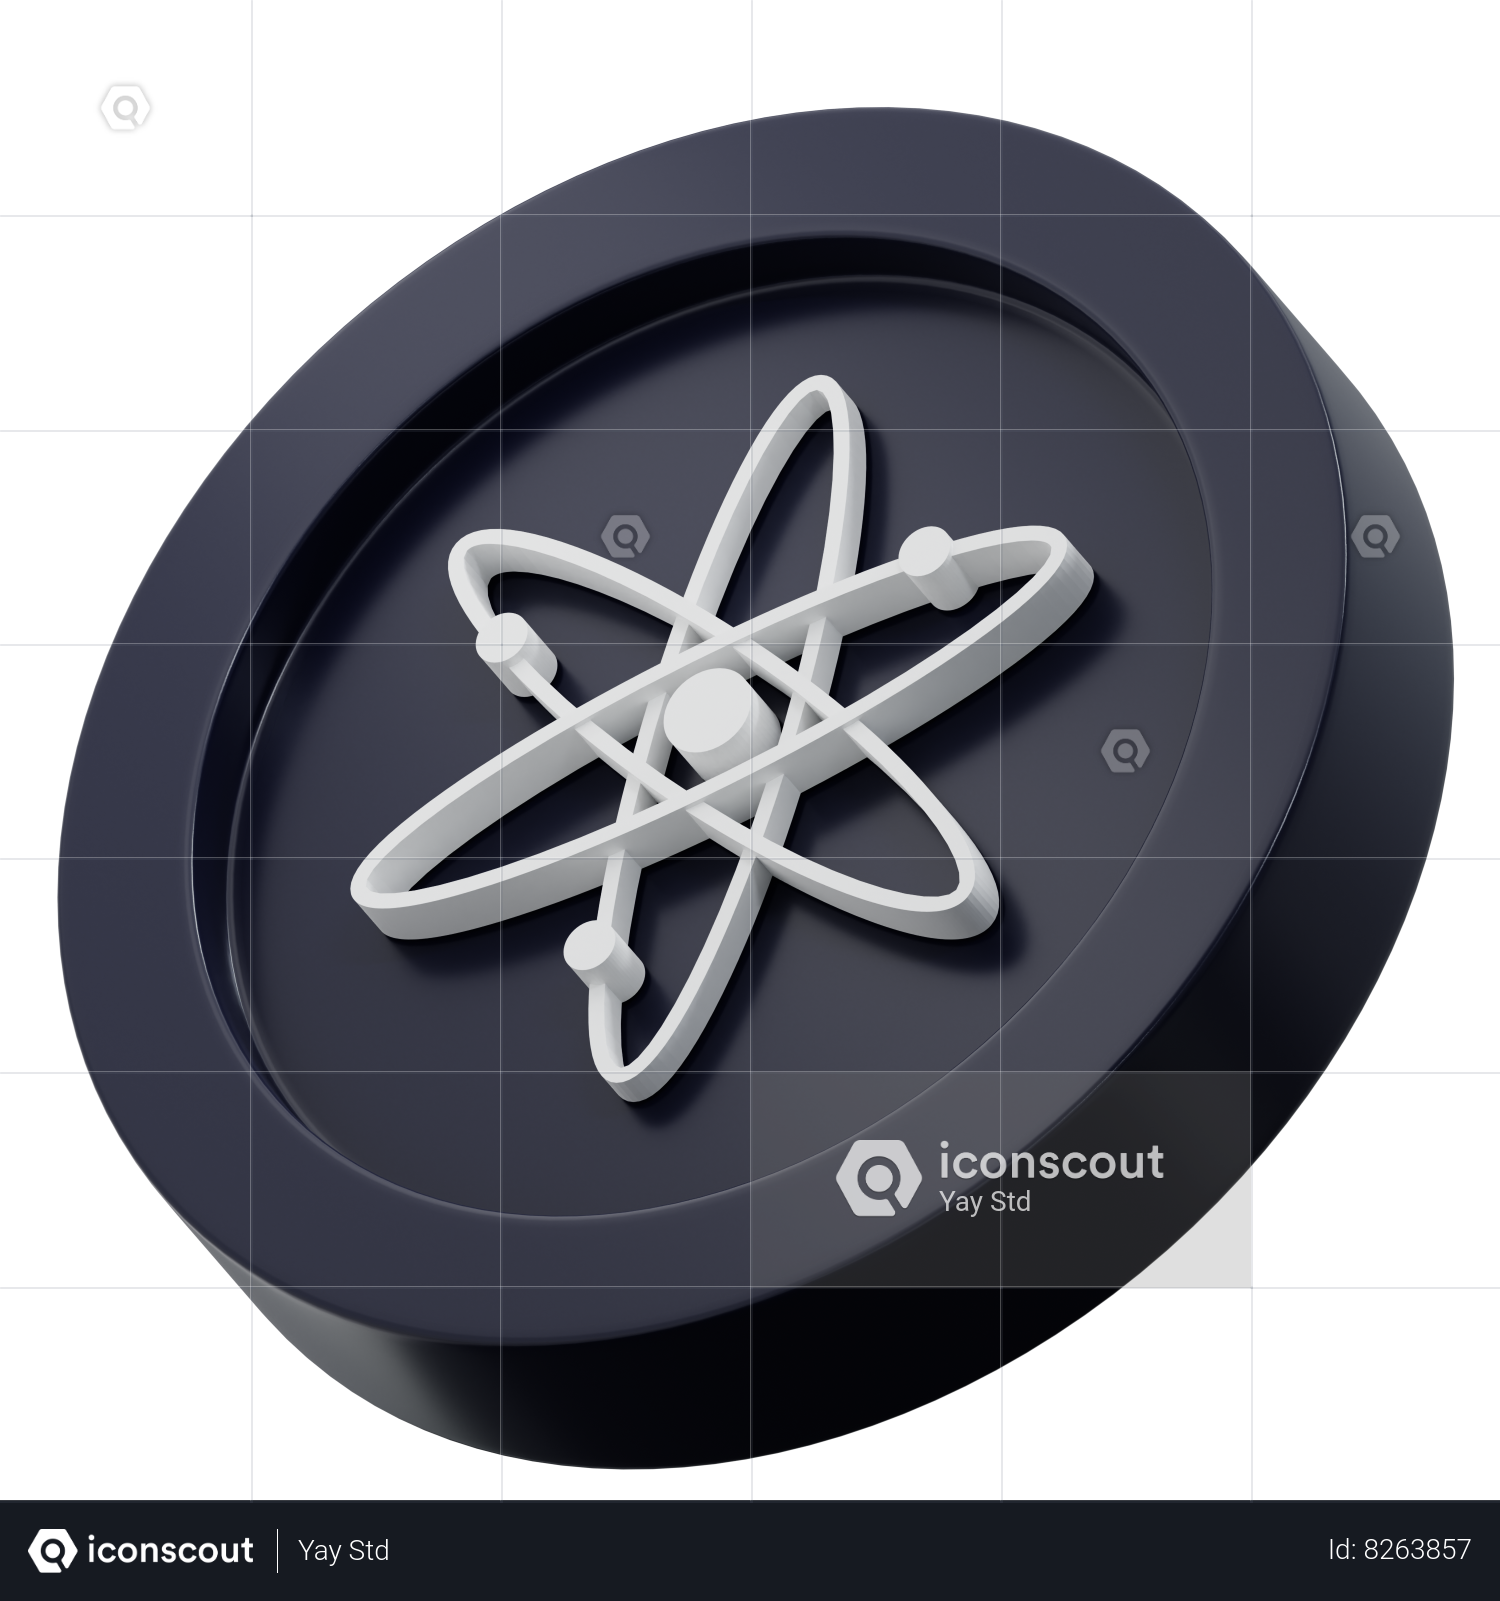 Cosmos | Planet logo, Sleep logo, Logo design creative